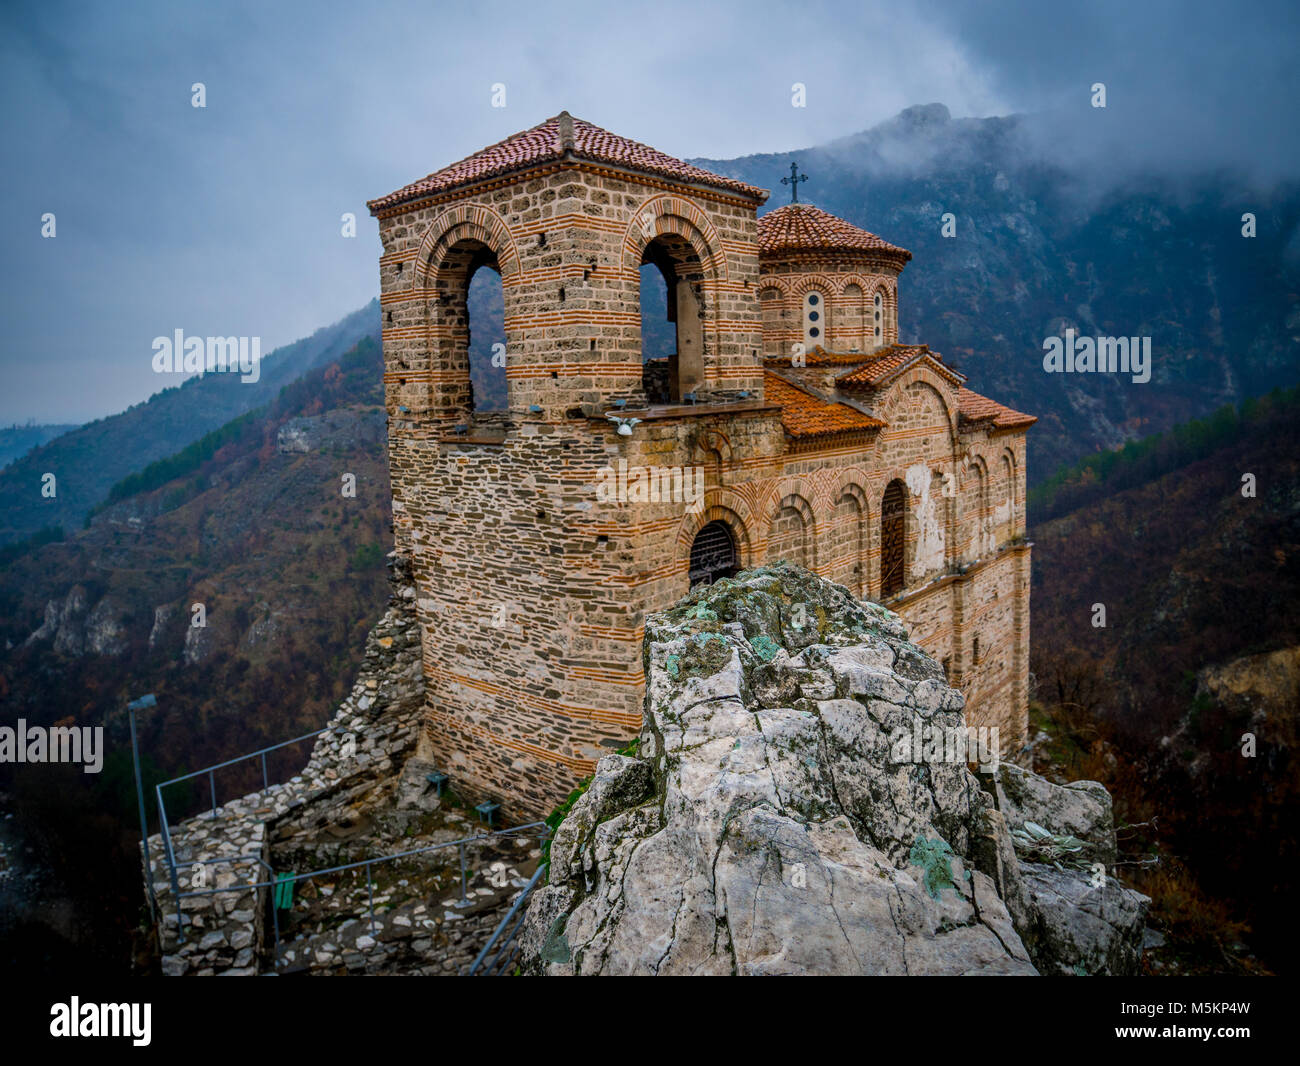 Asen's Fortress / Mountain view - Bulgaria, Asenovgrad Stock Photo